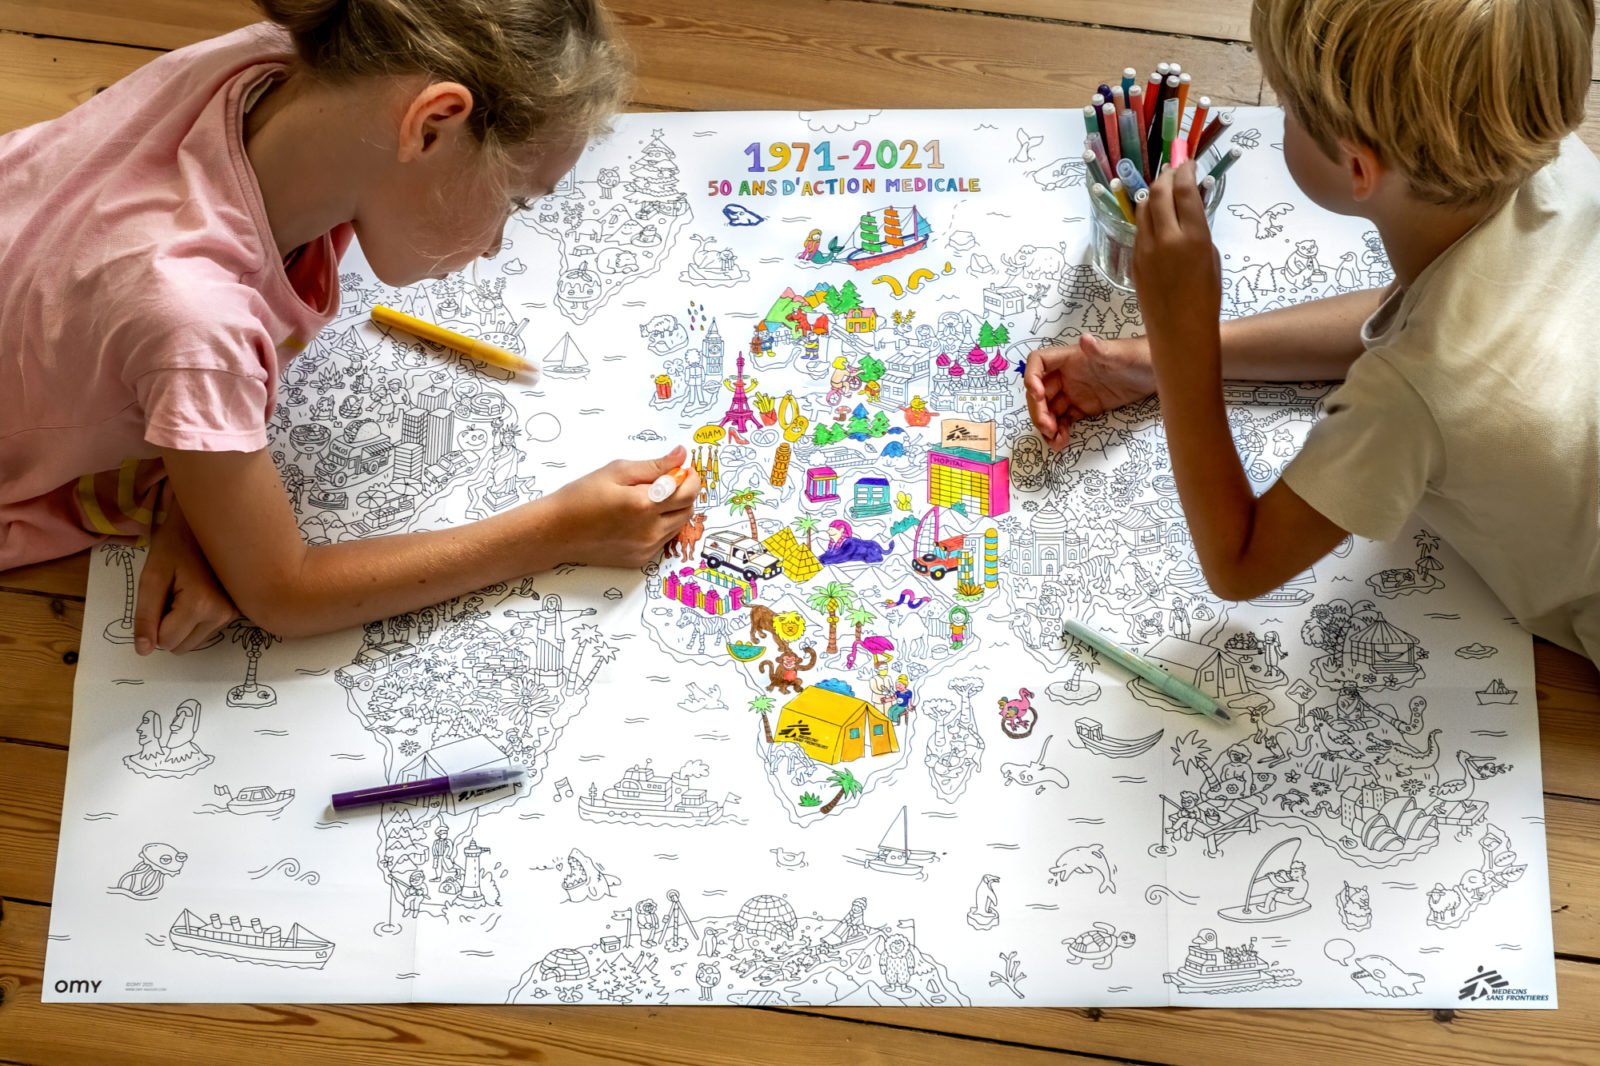 Les posters à colorier - La carte du monde